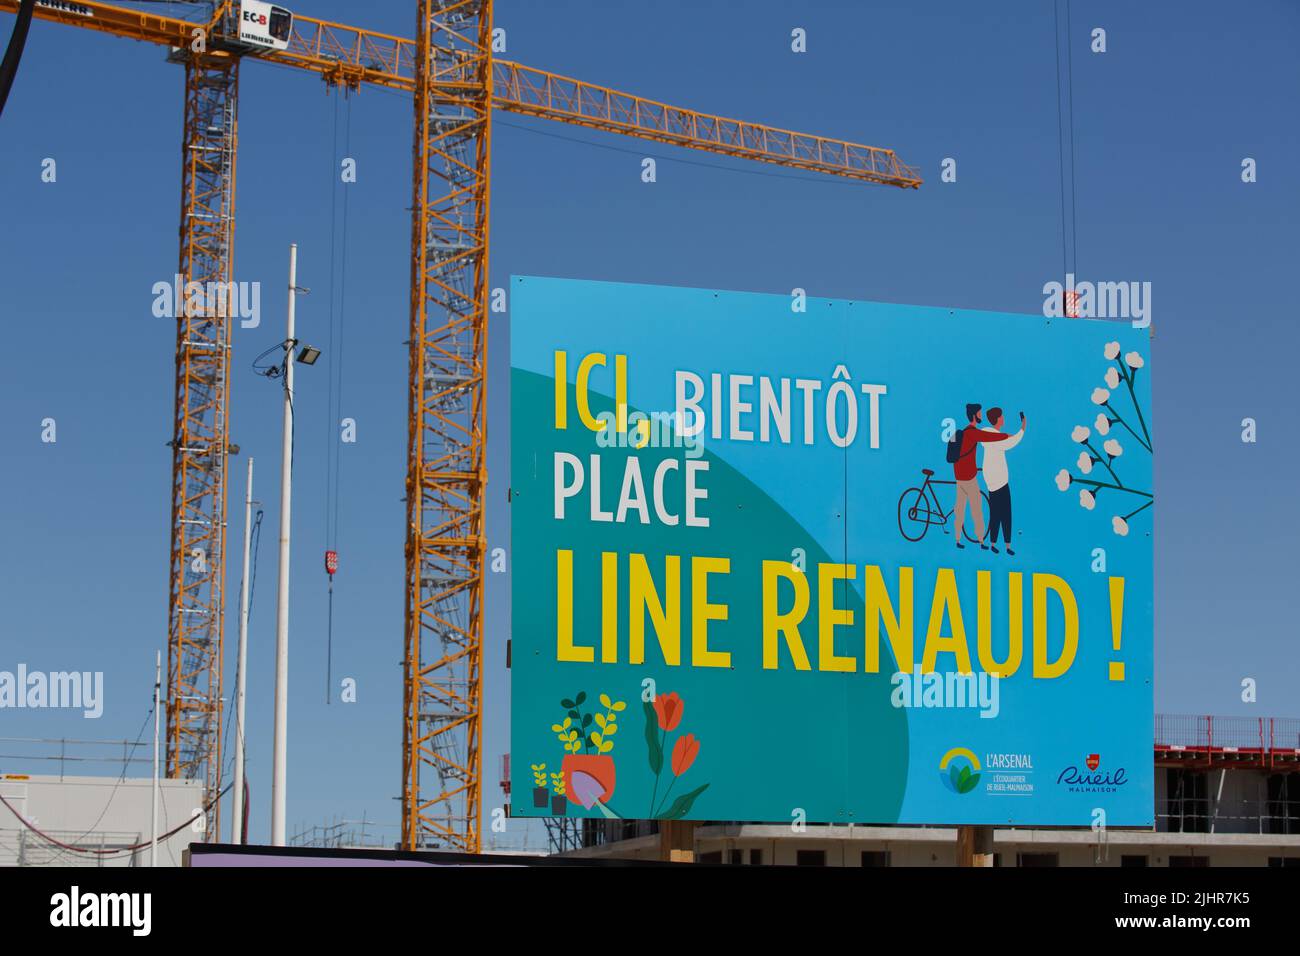 France, Ile de France region, Hauts de France, Rueil-Malmaison, Jacques Chirac park, construction cranes around the future Line Renaud square Stock Photo